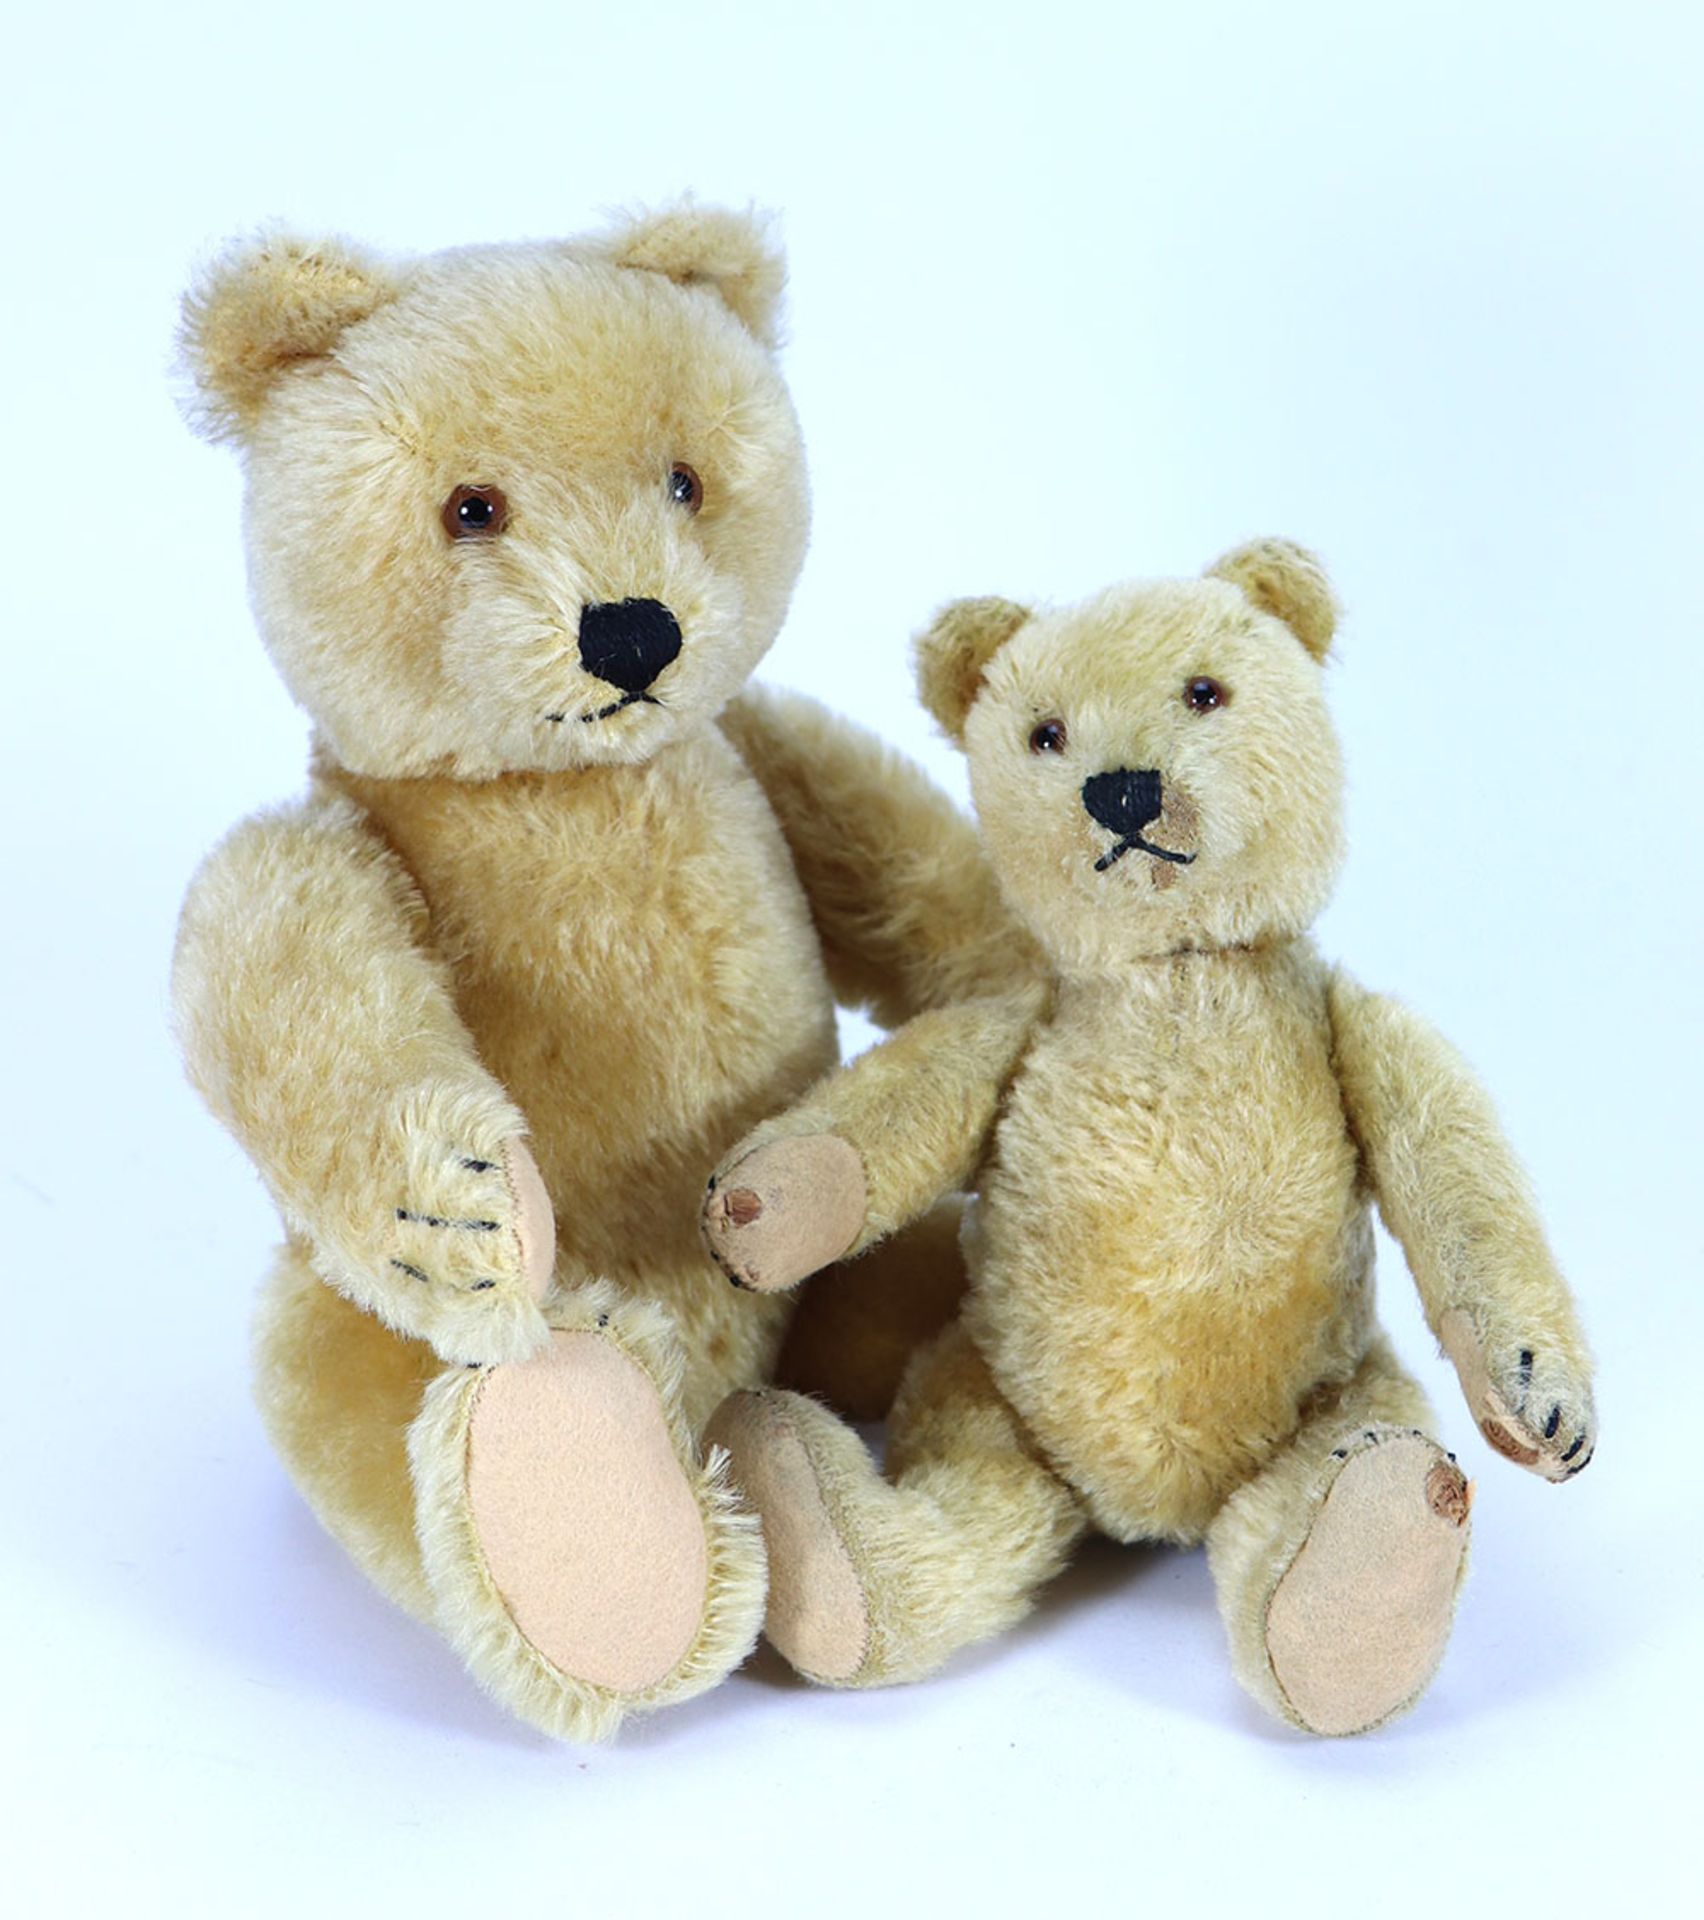 Two Steiff golden mohair Original Teddy bears, 1950s,